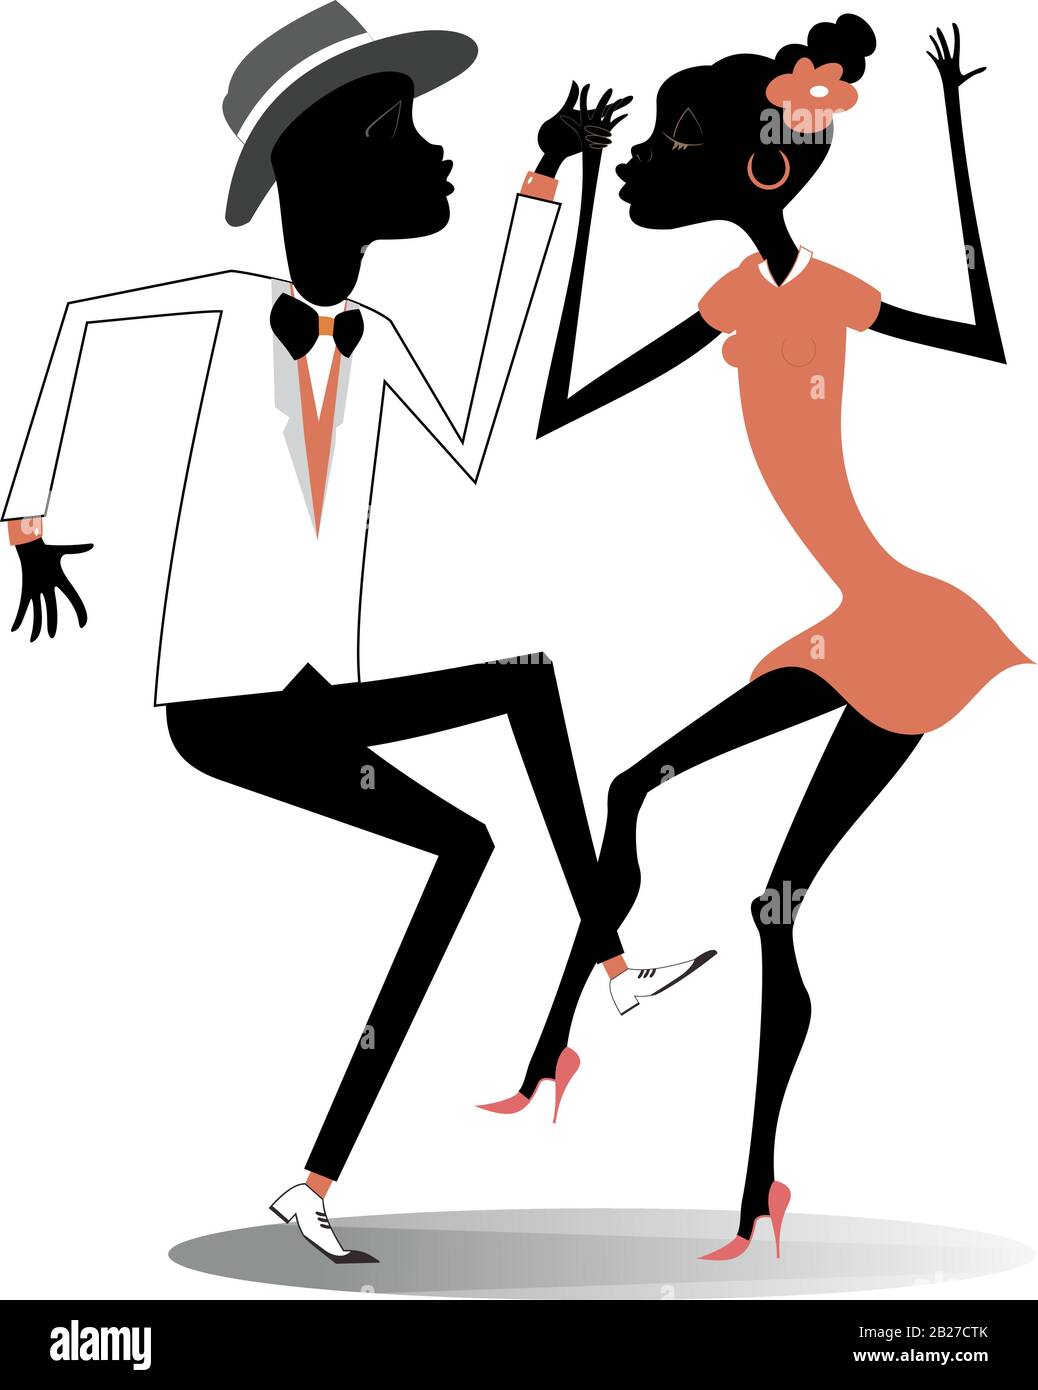 Romantisch tanzendes junges afrikanisches Paar isolierte Illustration Stock Vektor